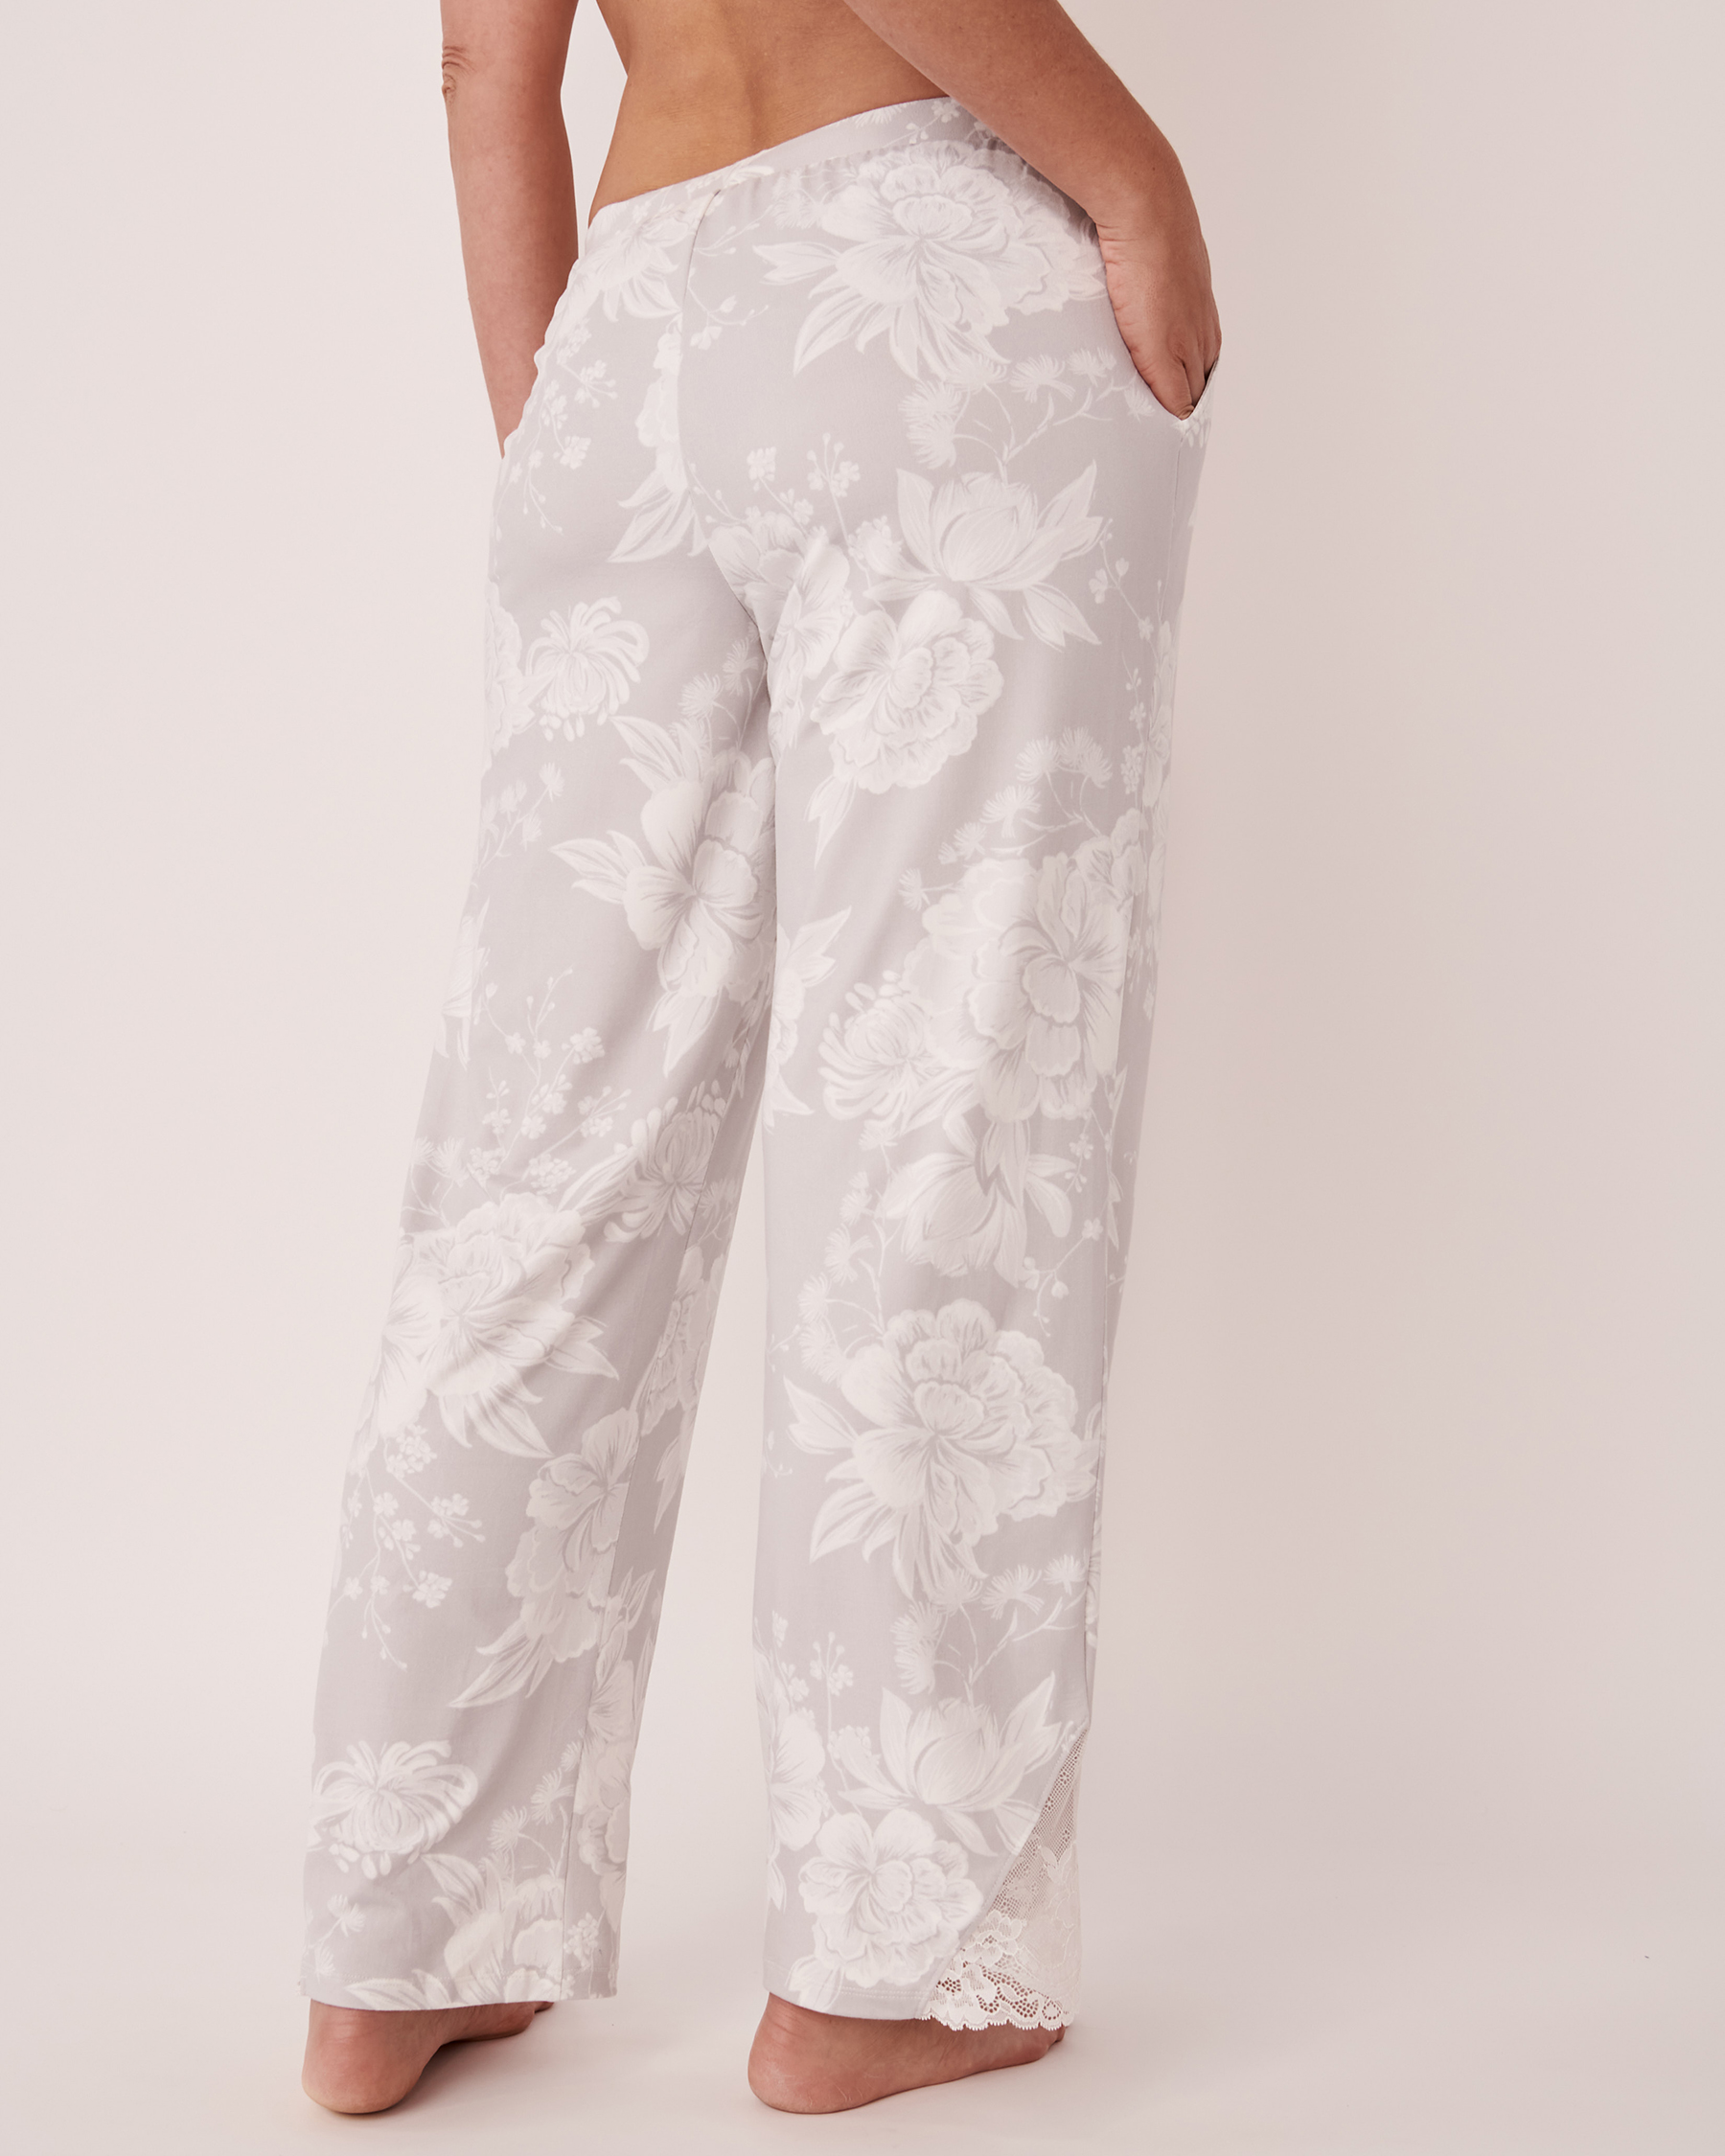 LA VIE EN ROSE Pantalon ultra doux détail de dentelle Floral gris romantique 40200355 - Voir2